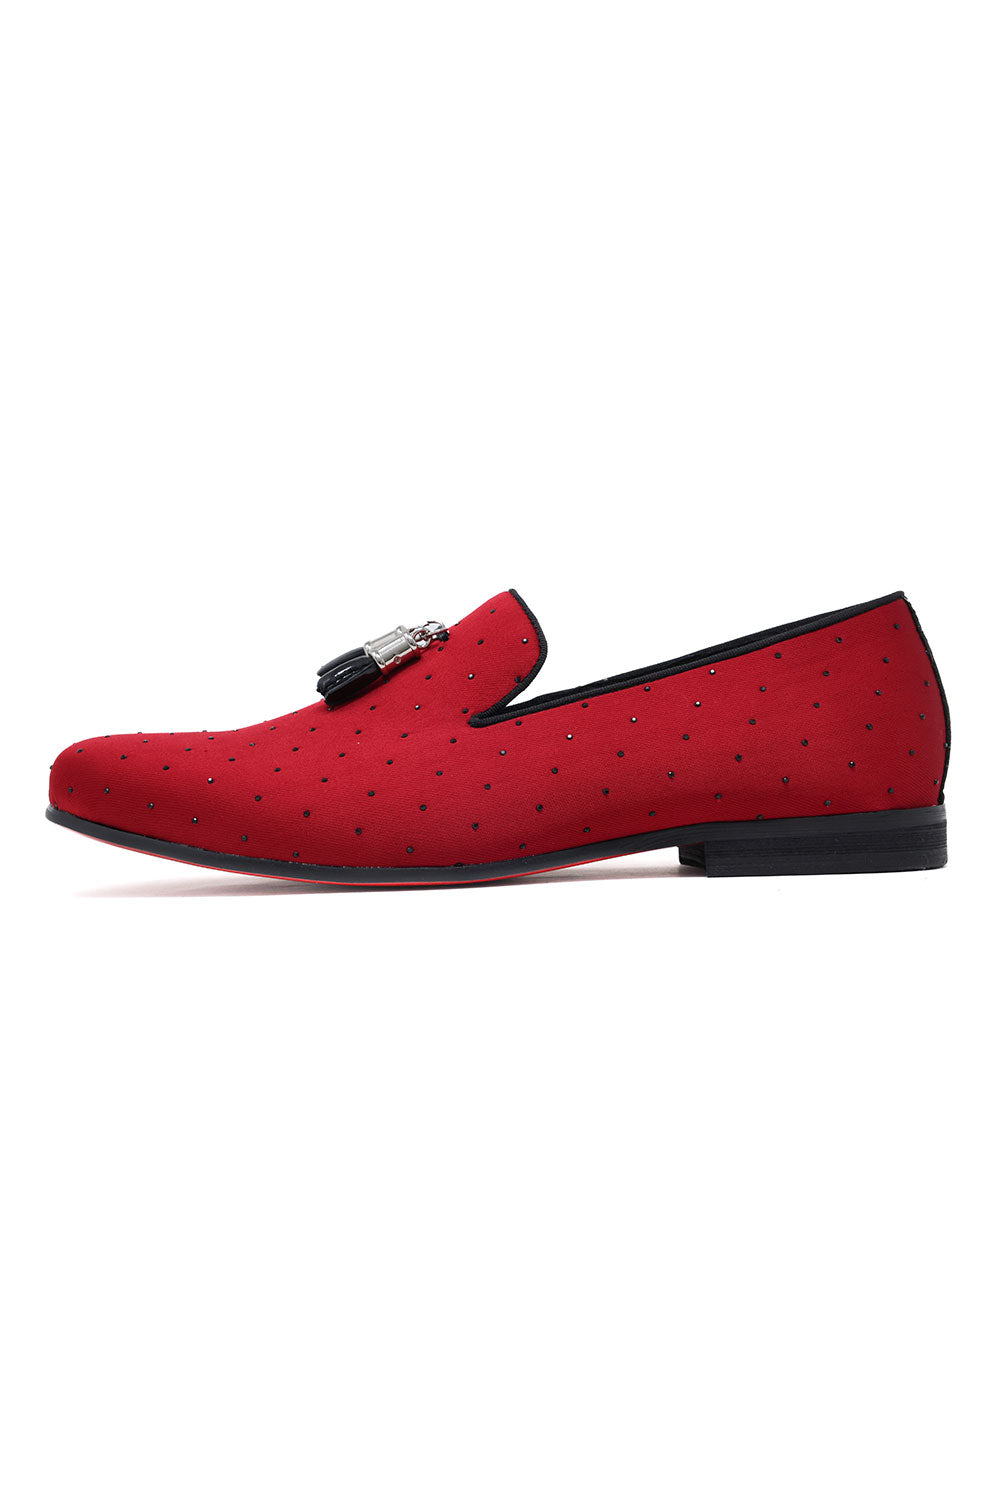 BARABAS Men's Solid Pattern Design Luxury Tassel Loafer Shoes SH3087 Red Black